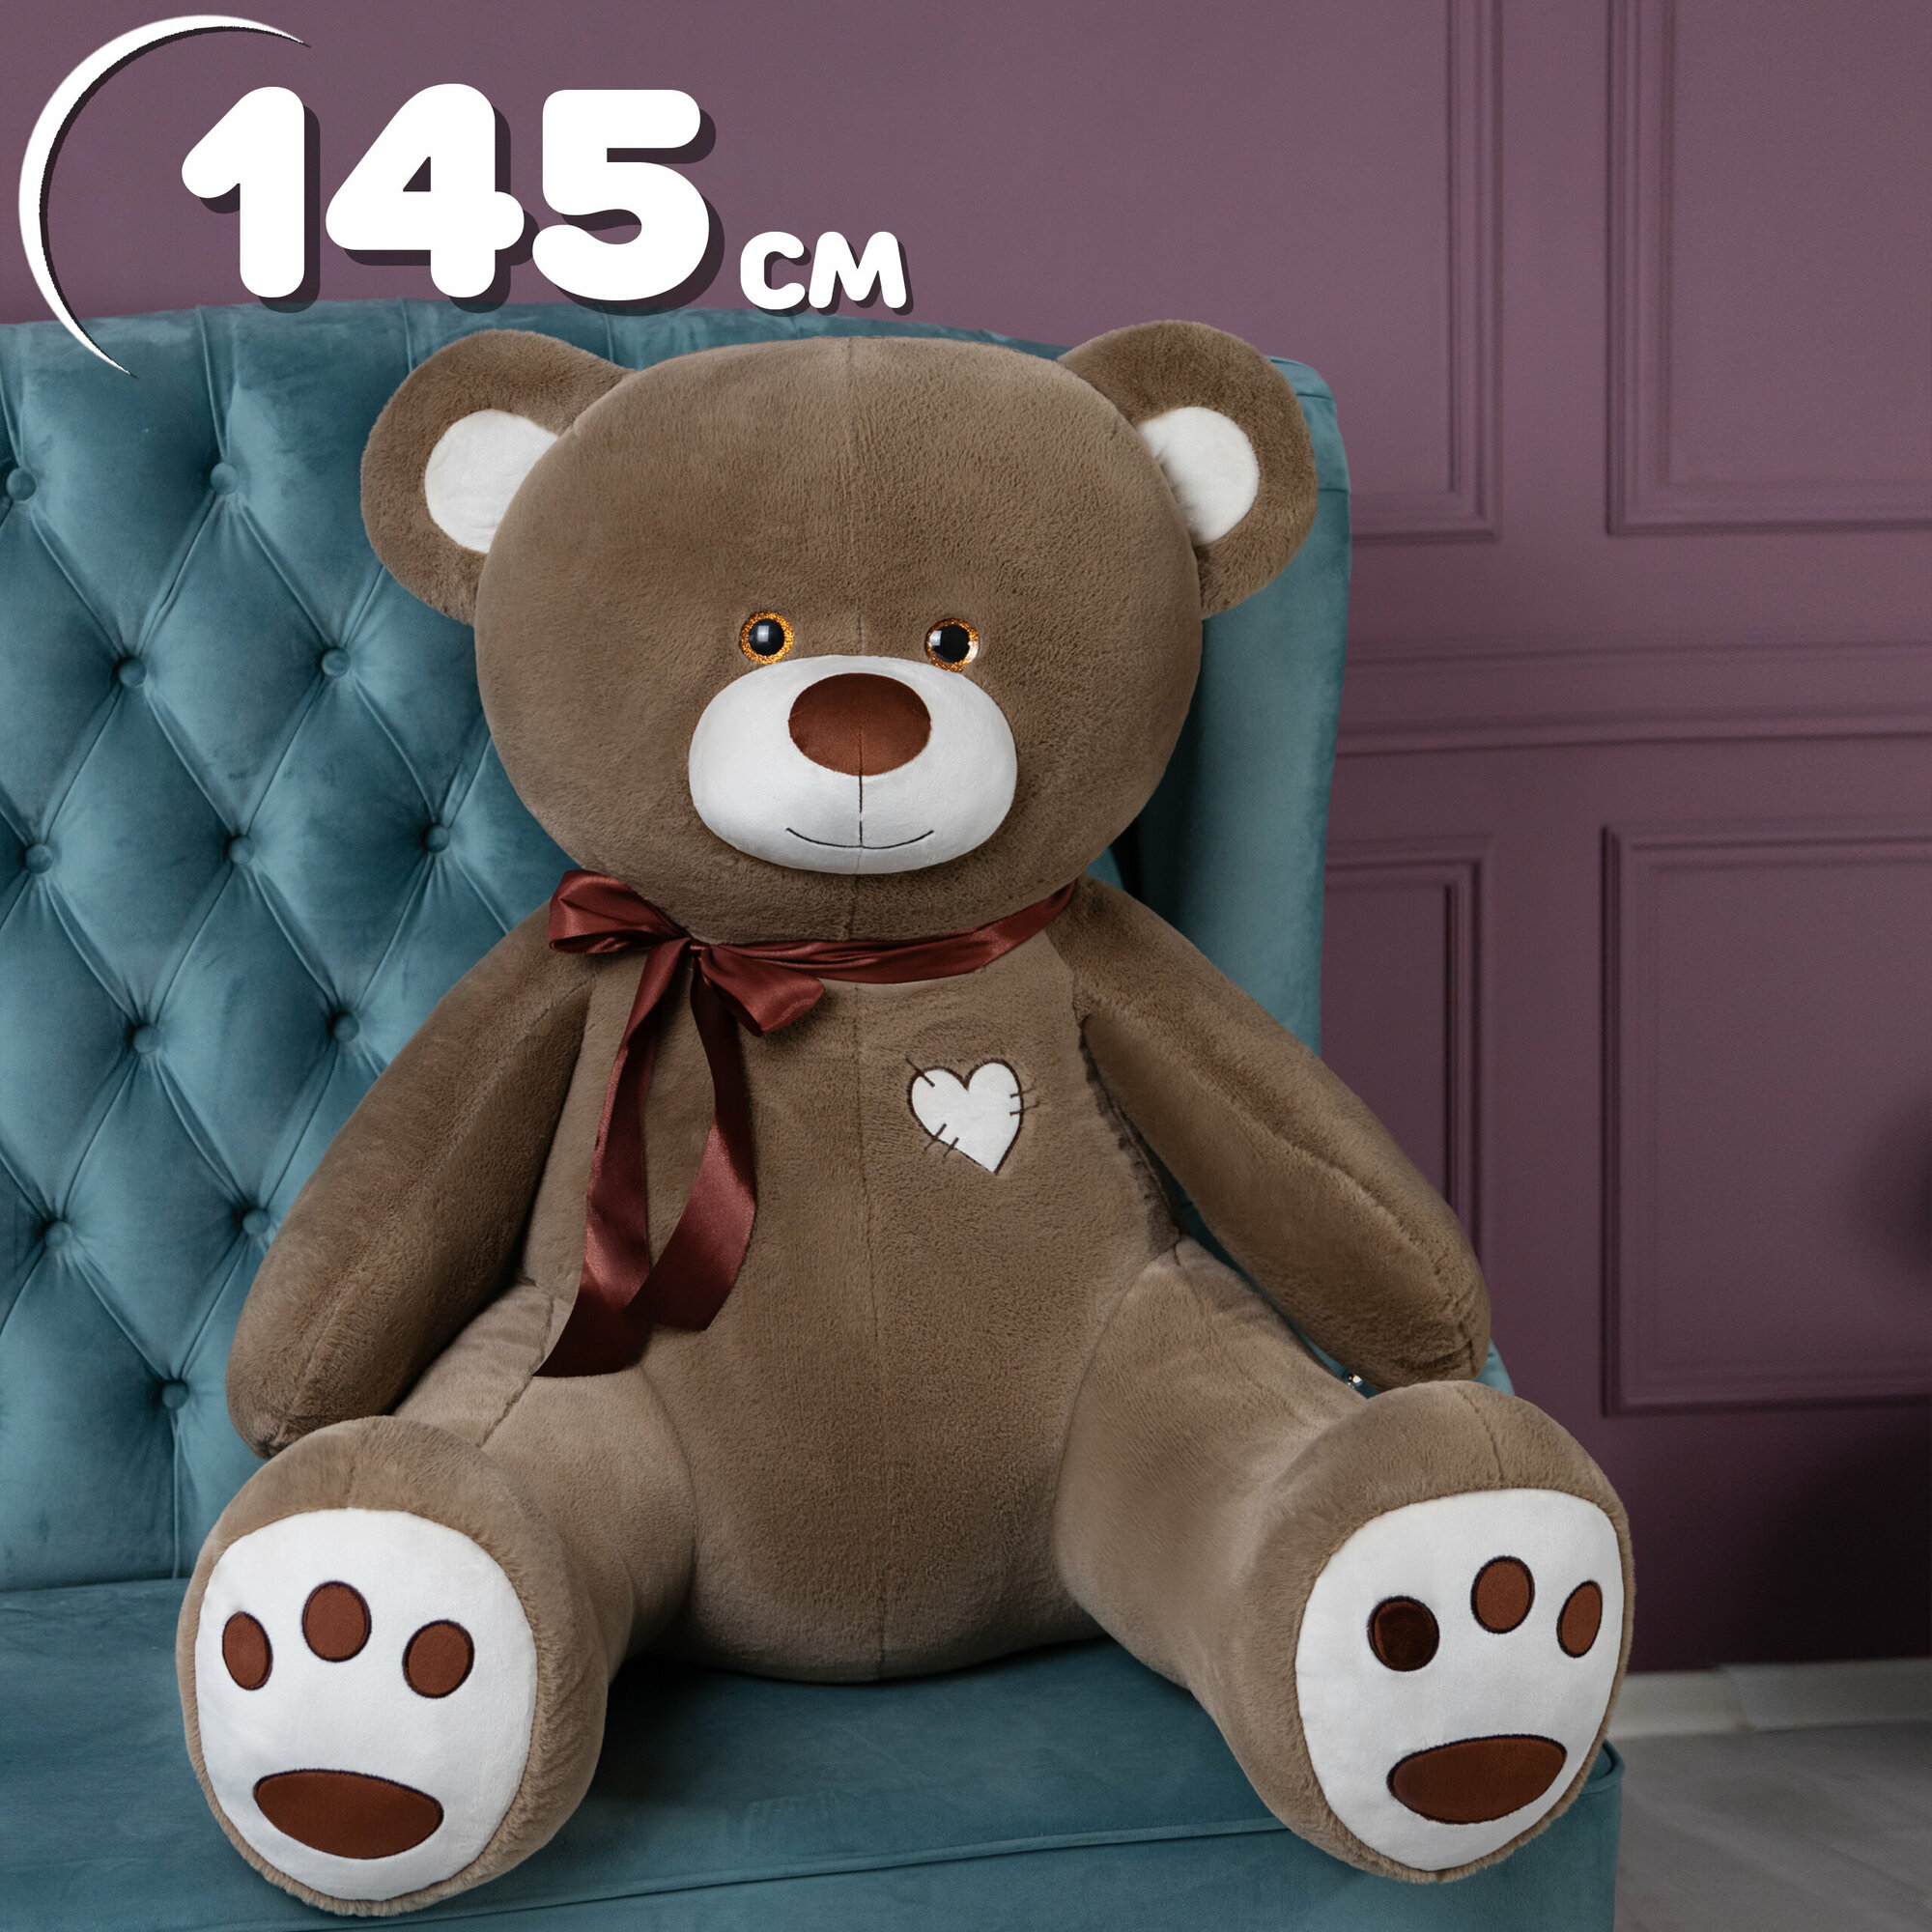 Мягкая игрушка большой плюшевый медведь ТОМ 145 см, большой плюшевый мишка, подарок девушке, ребенку на день рождение, цвет бурый